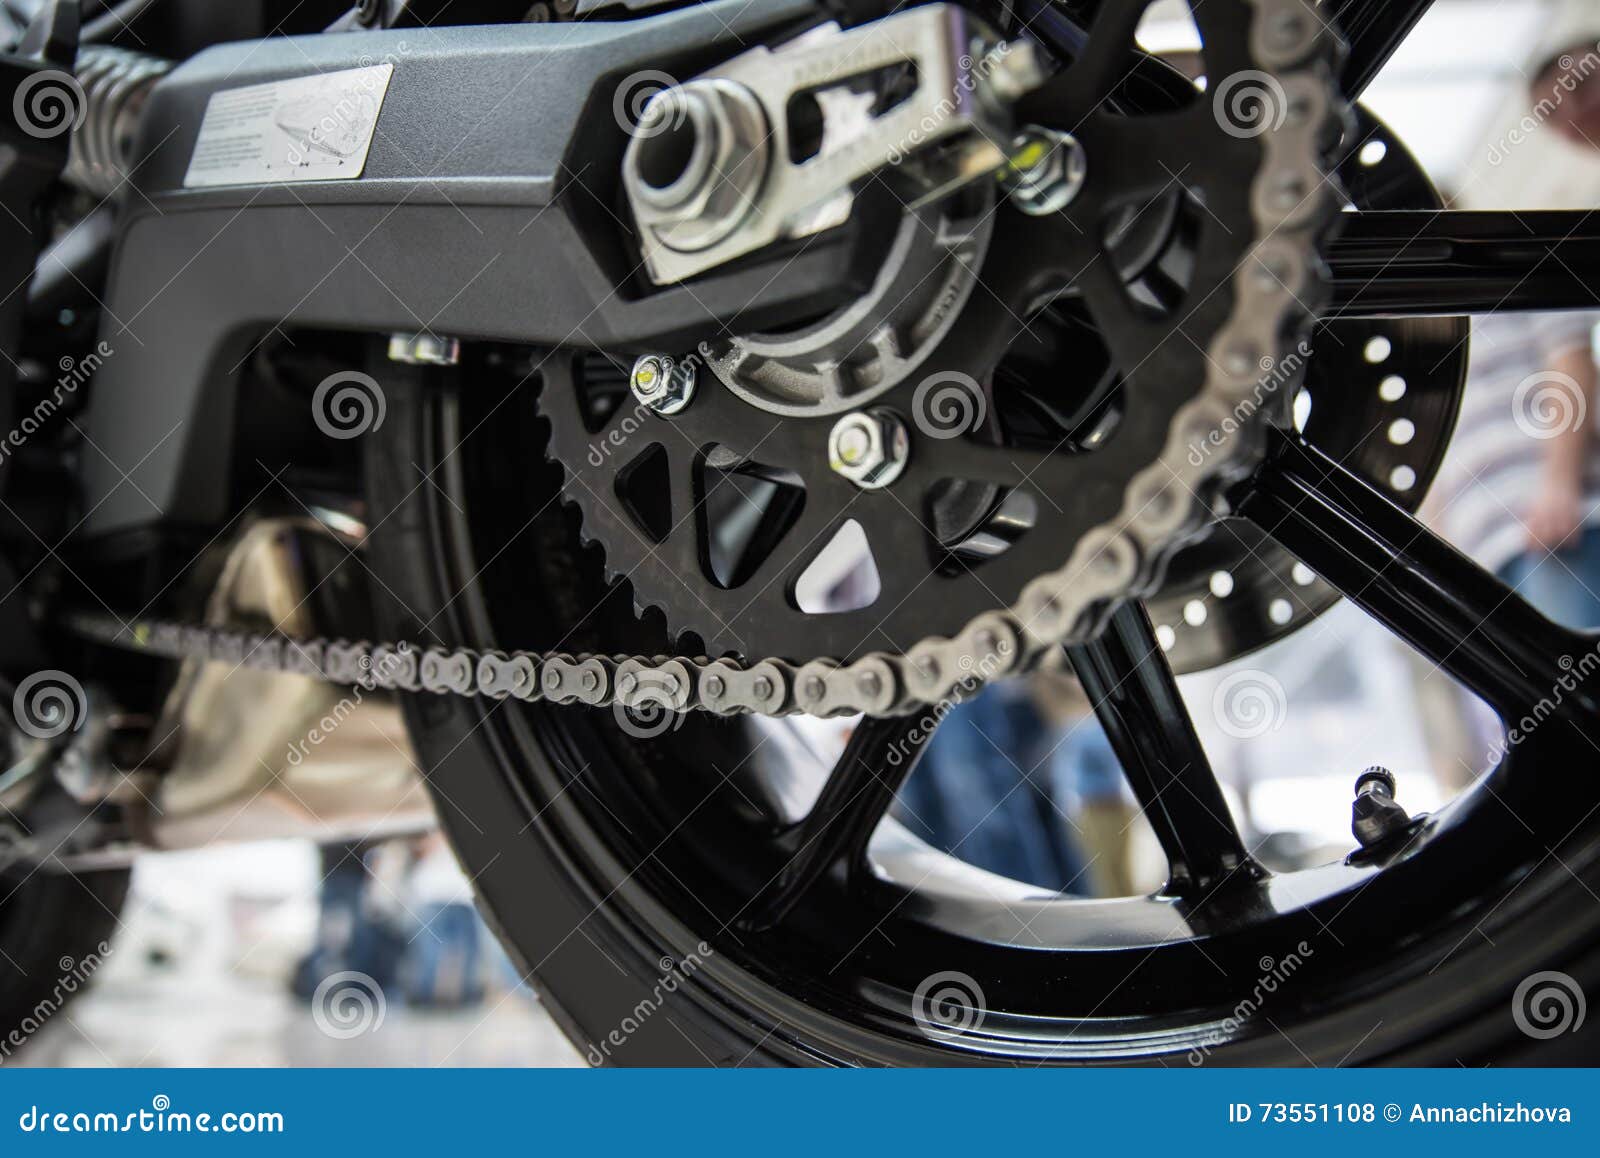 Chaîne D'entraînement De Moto Photo stock - Image du action